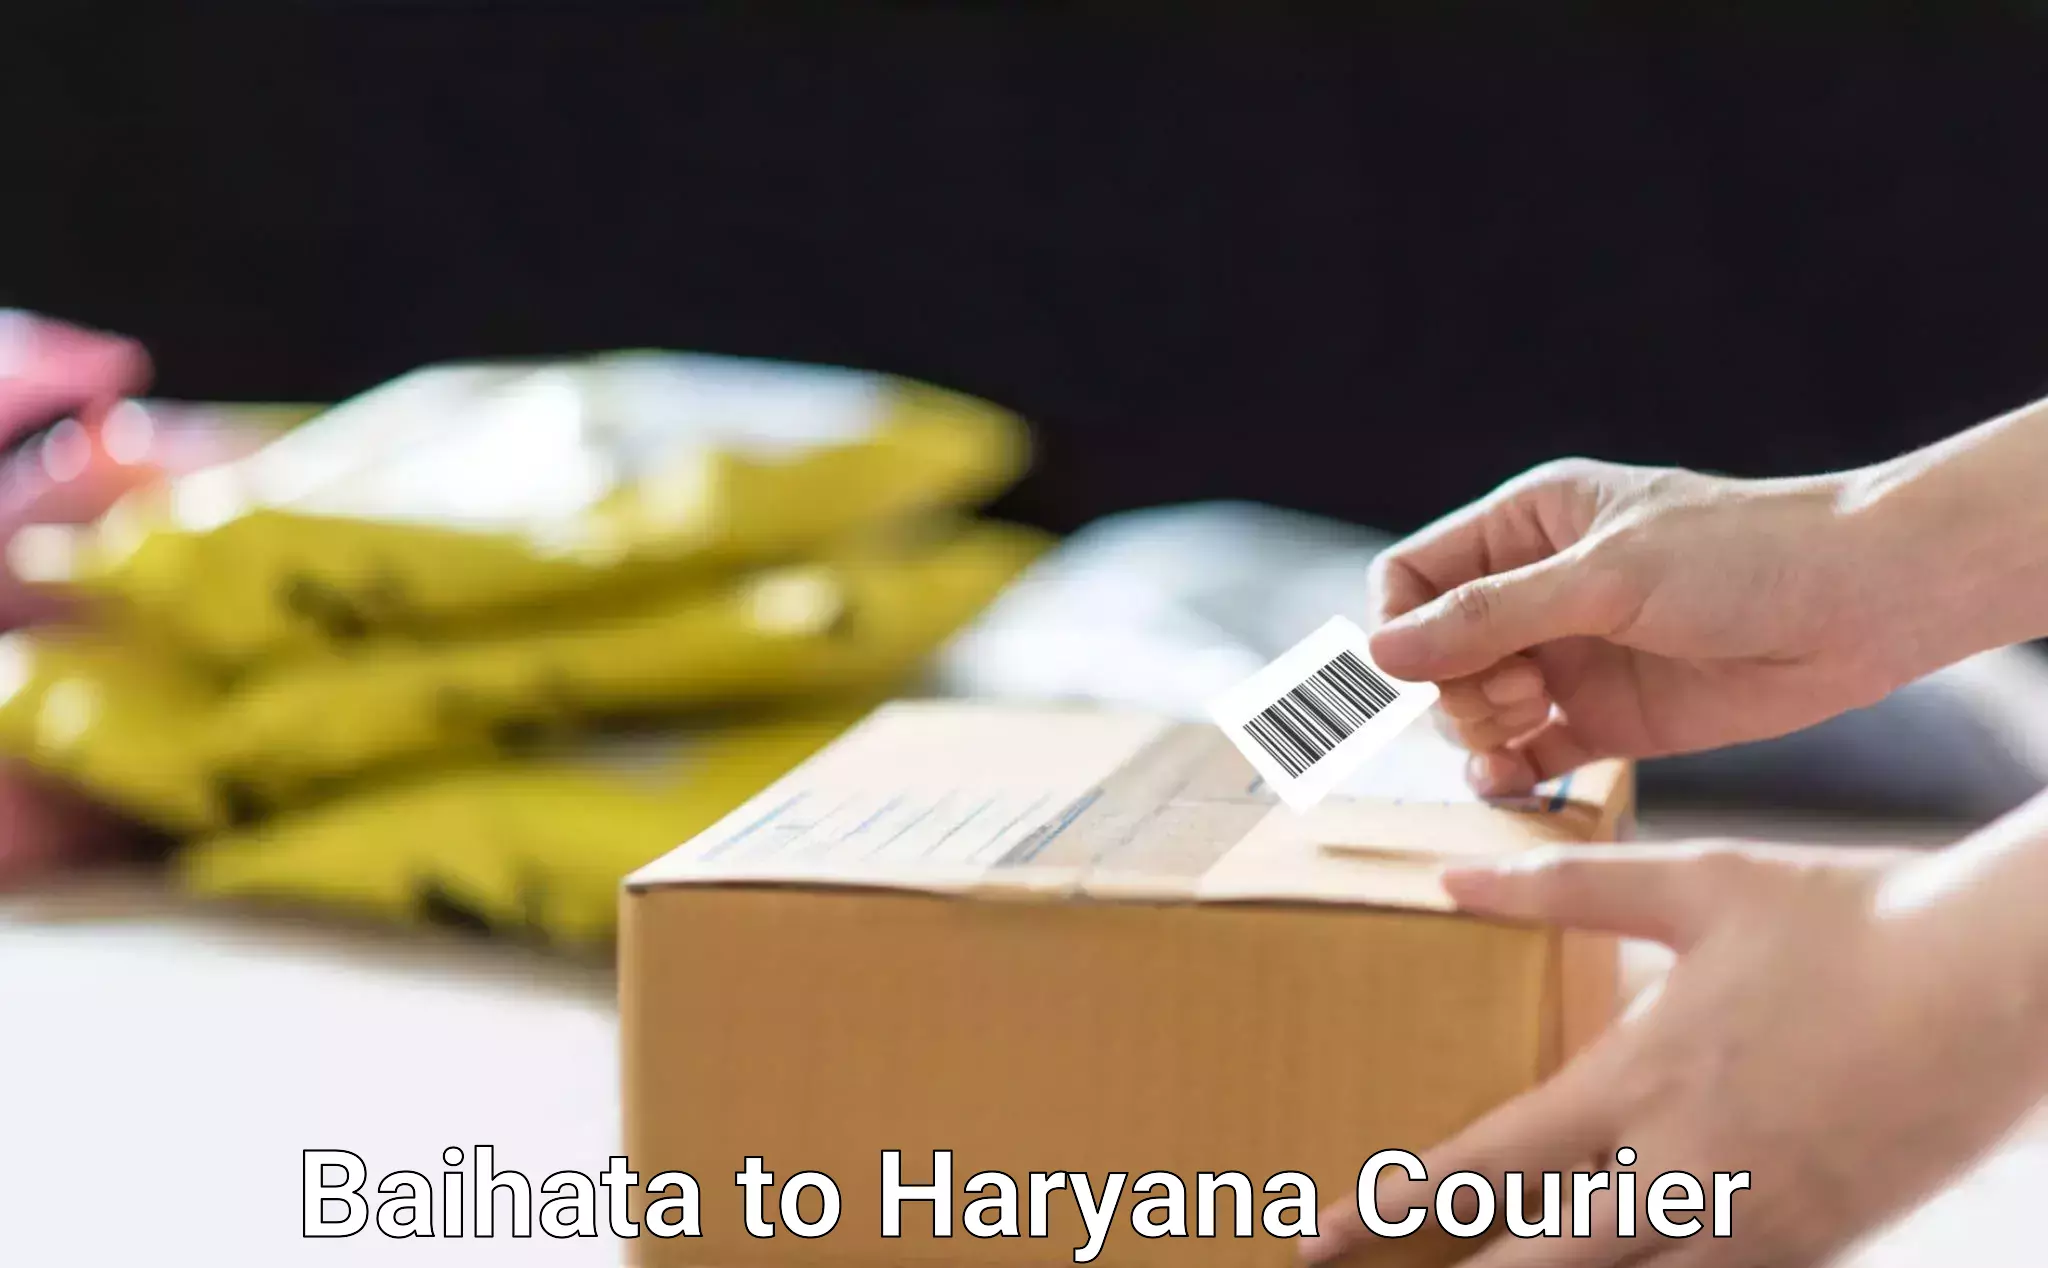 Urgent courier needs Baihata to Panchkula